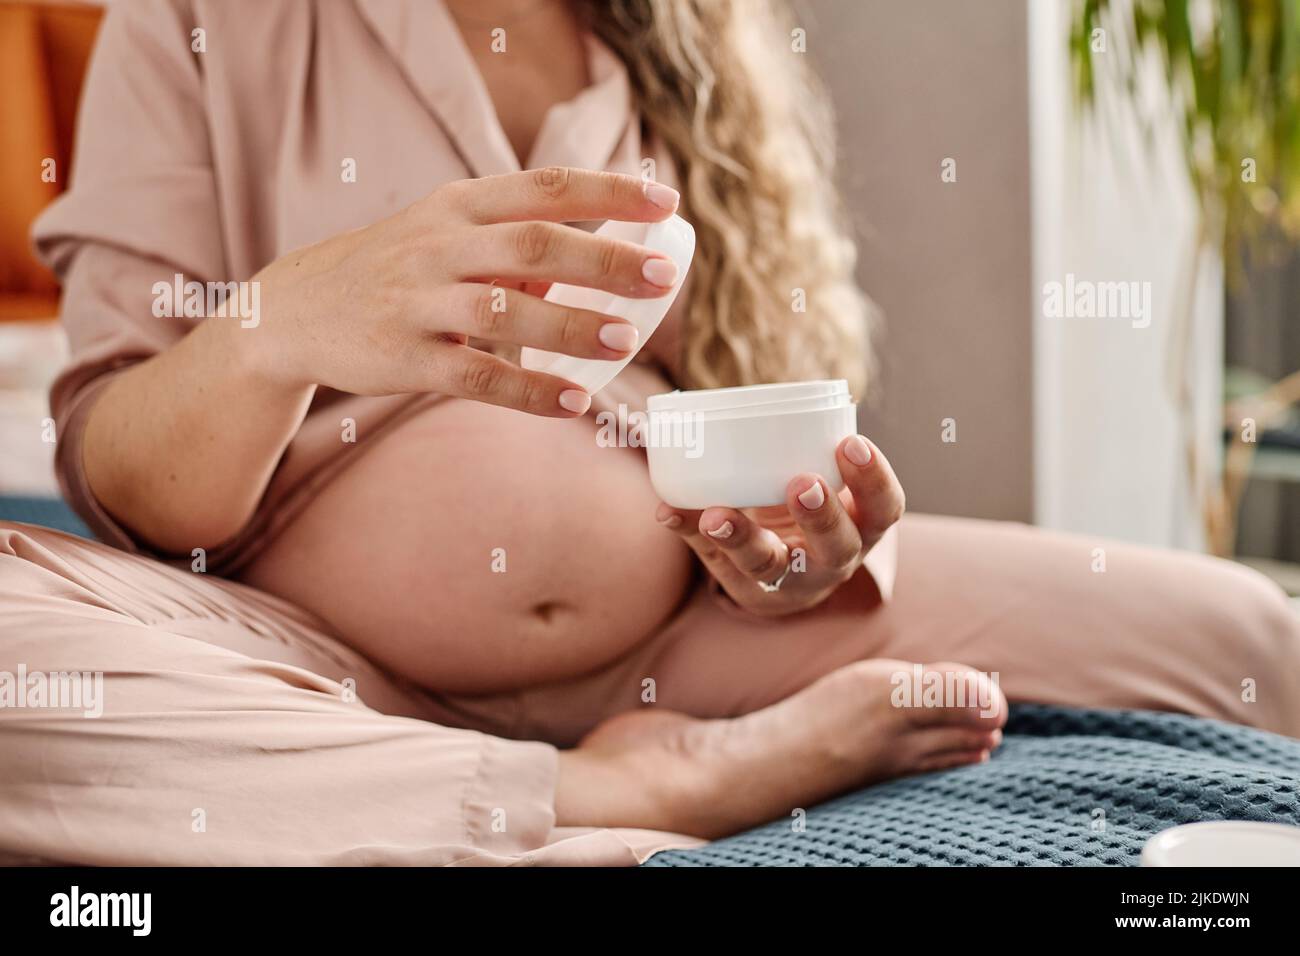 Mains de la jeune femme enceinte tenant un pot blanc ouvert en plastique et sa couverture tout en allant appliquer de la crème sur ses mains ou son corps Banque D'Images